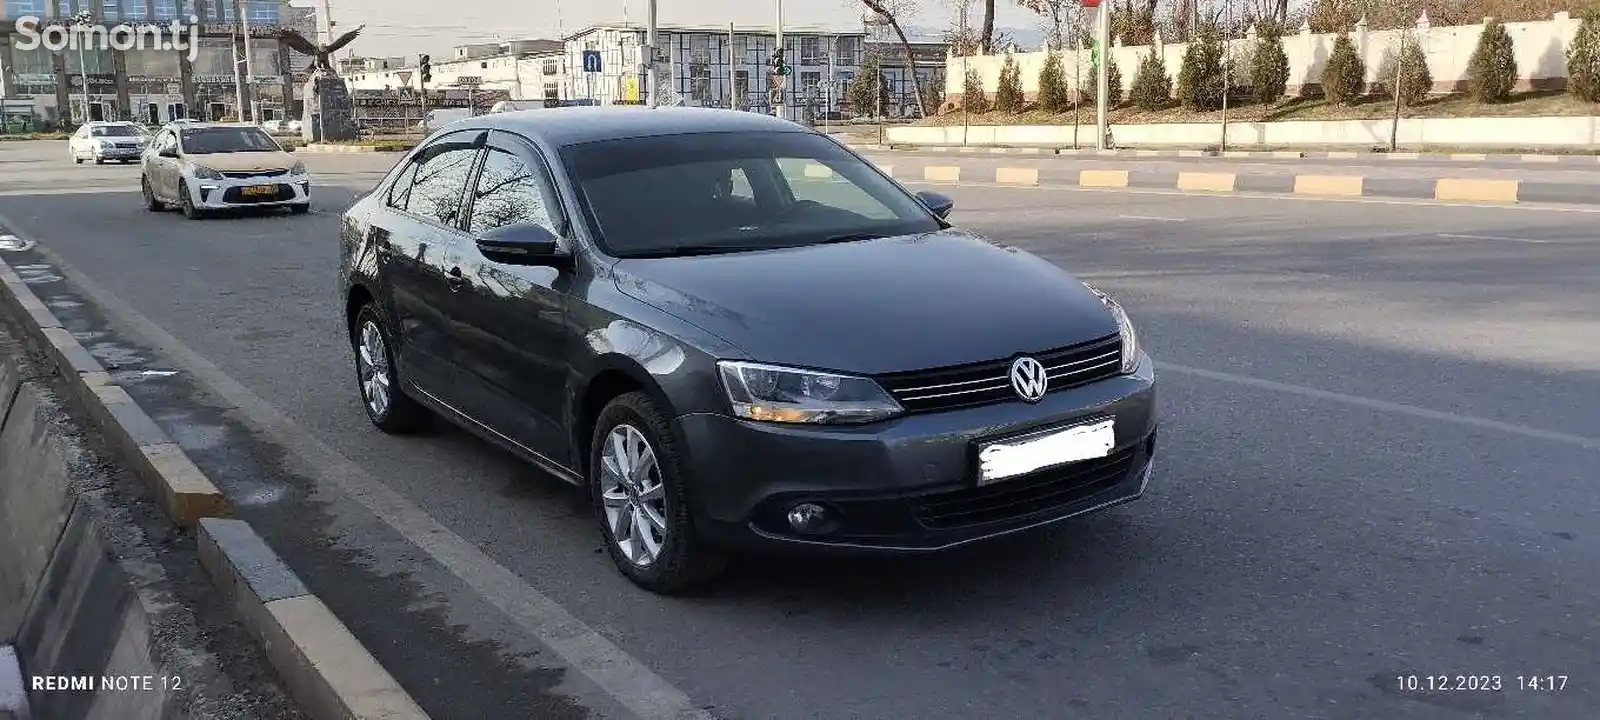 Volkswagen Jetta, 2014-2